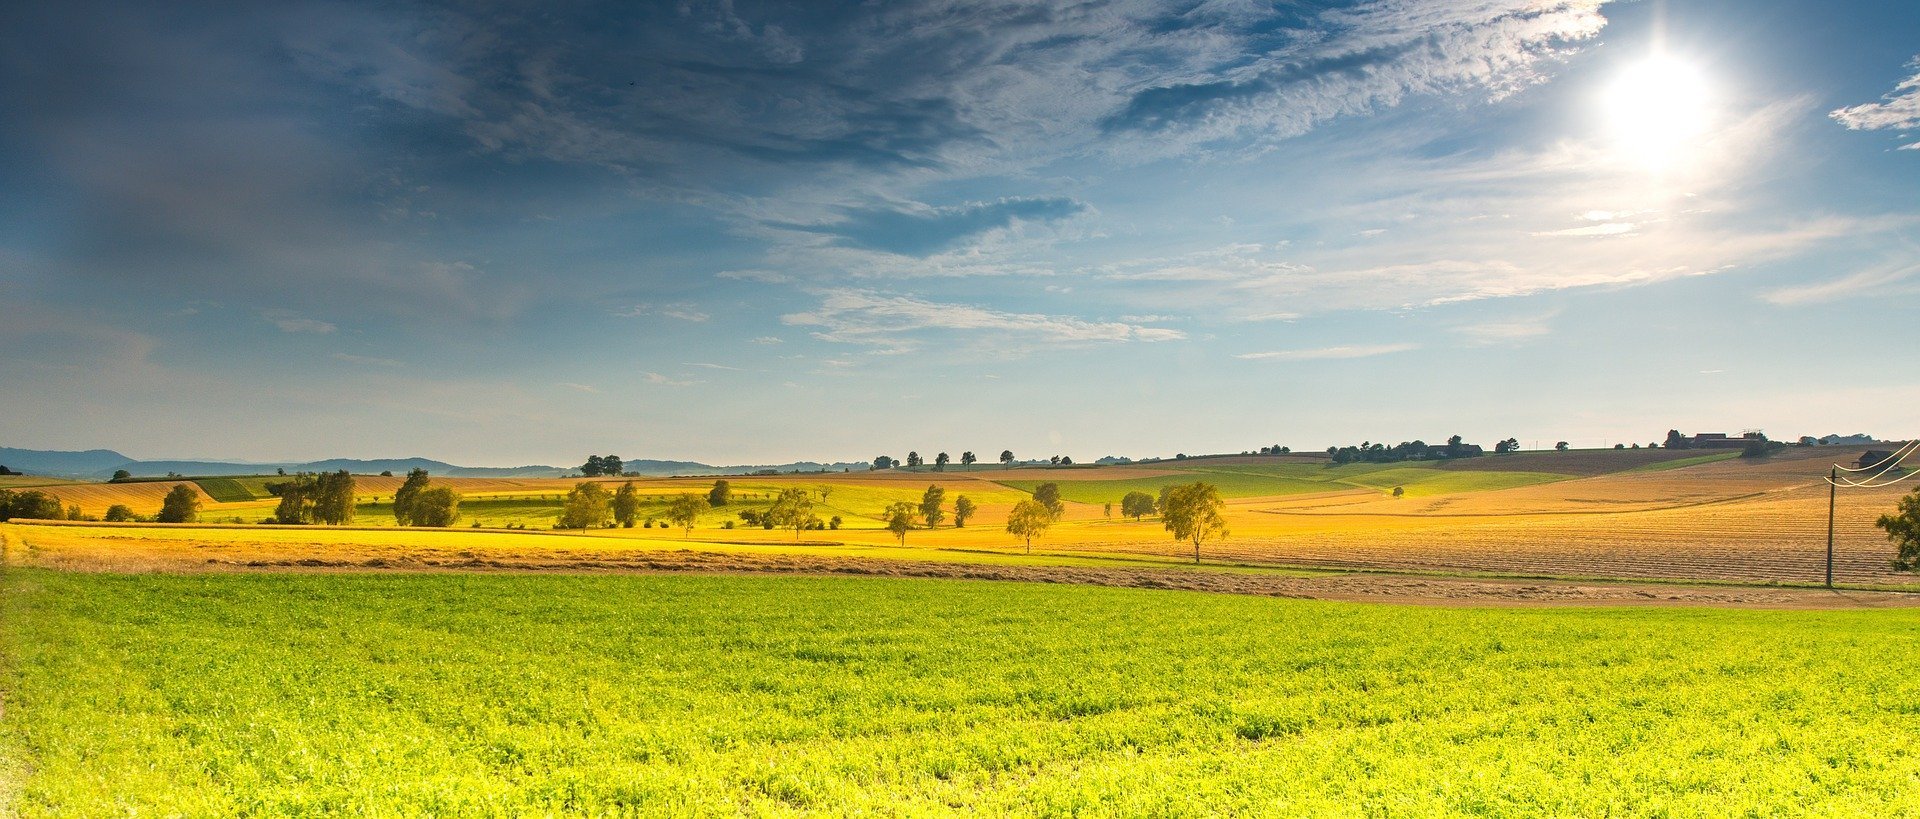 Foto de paisagem rural com céu ensolarado